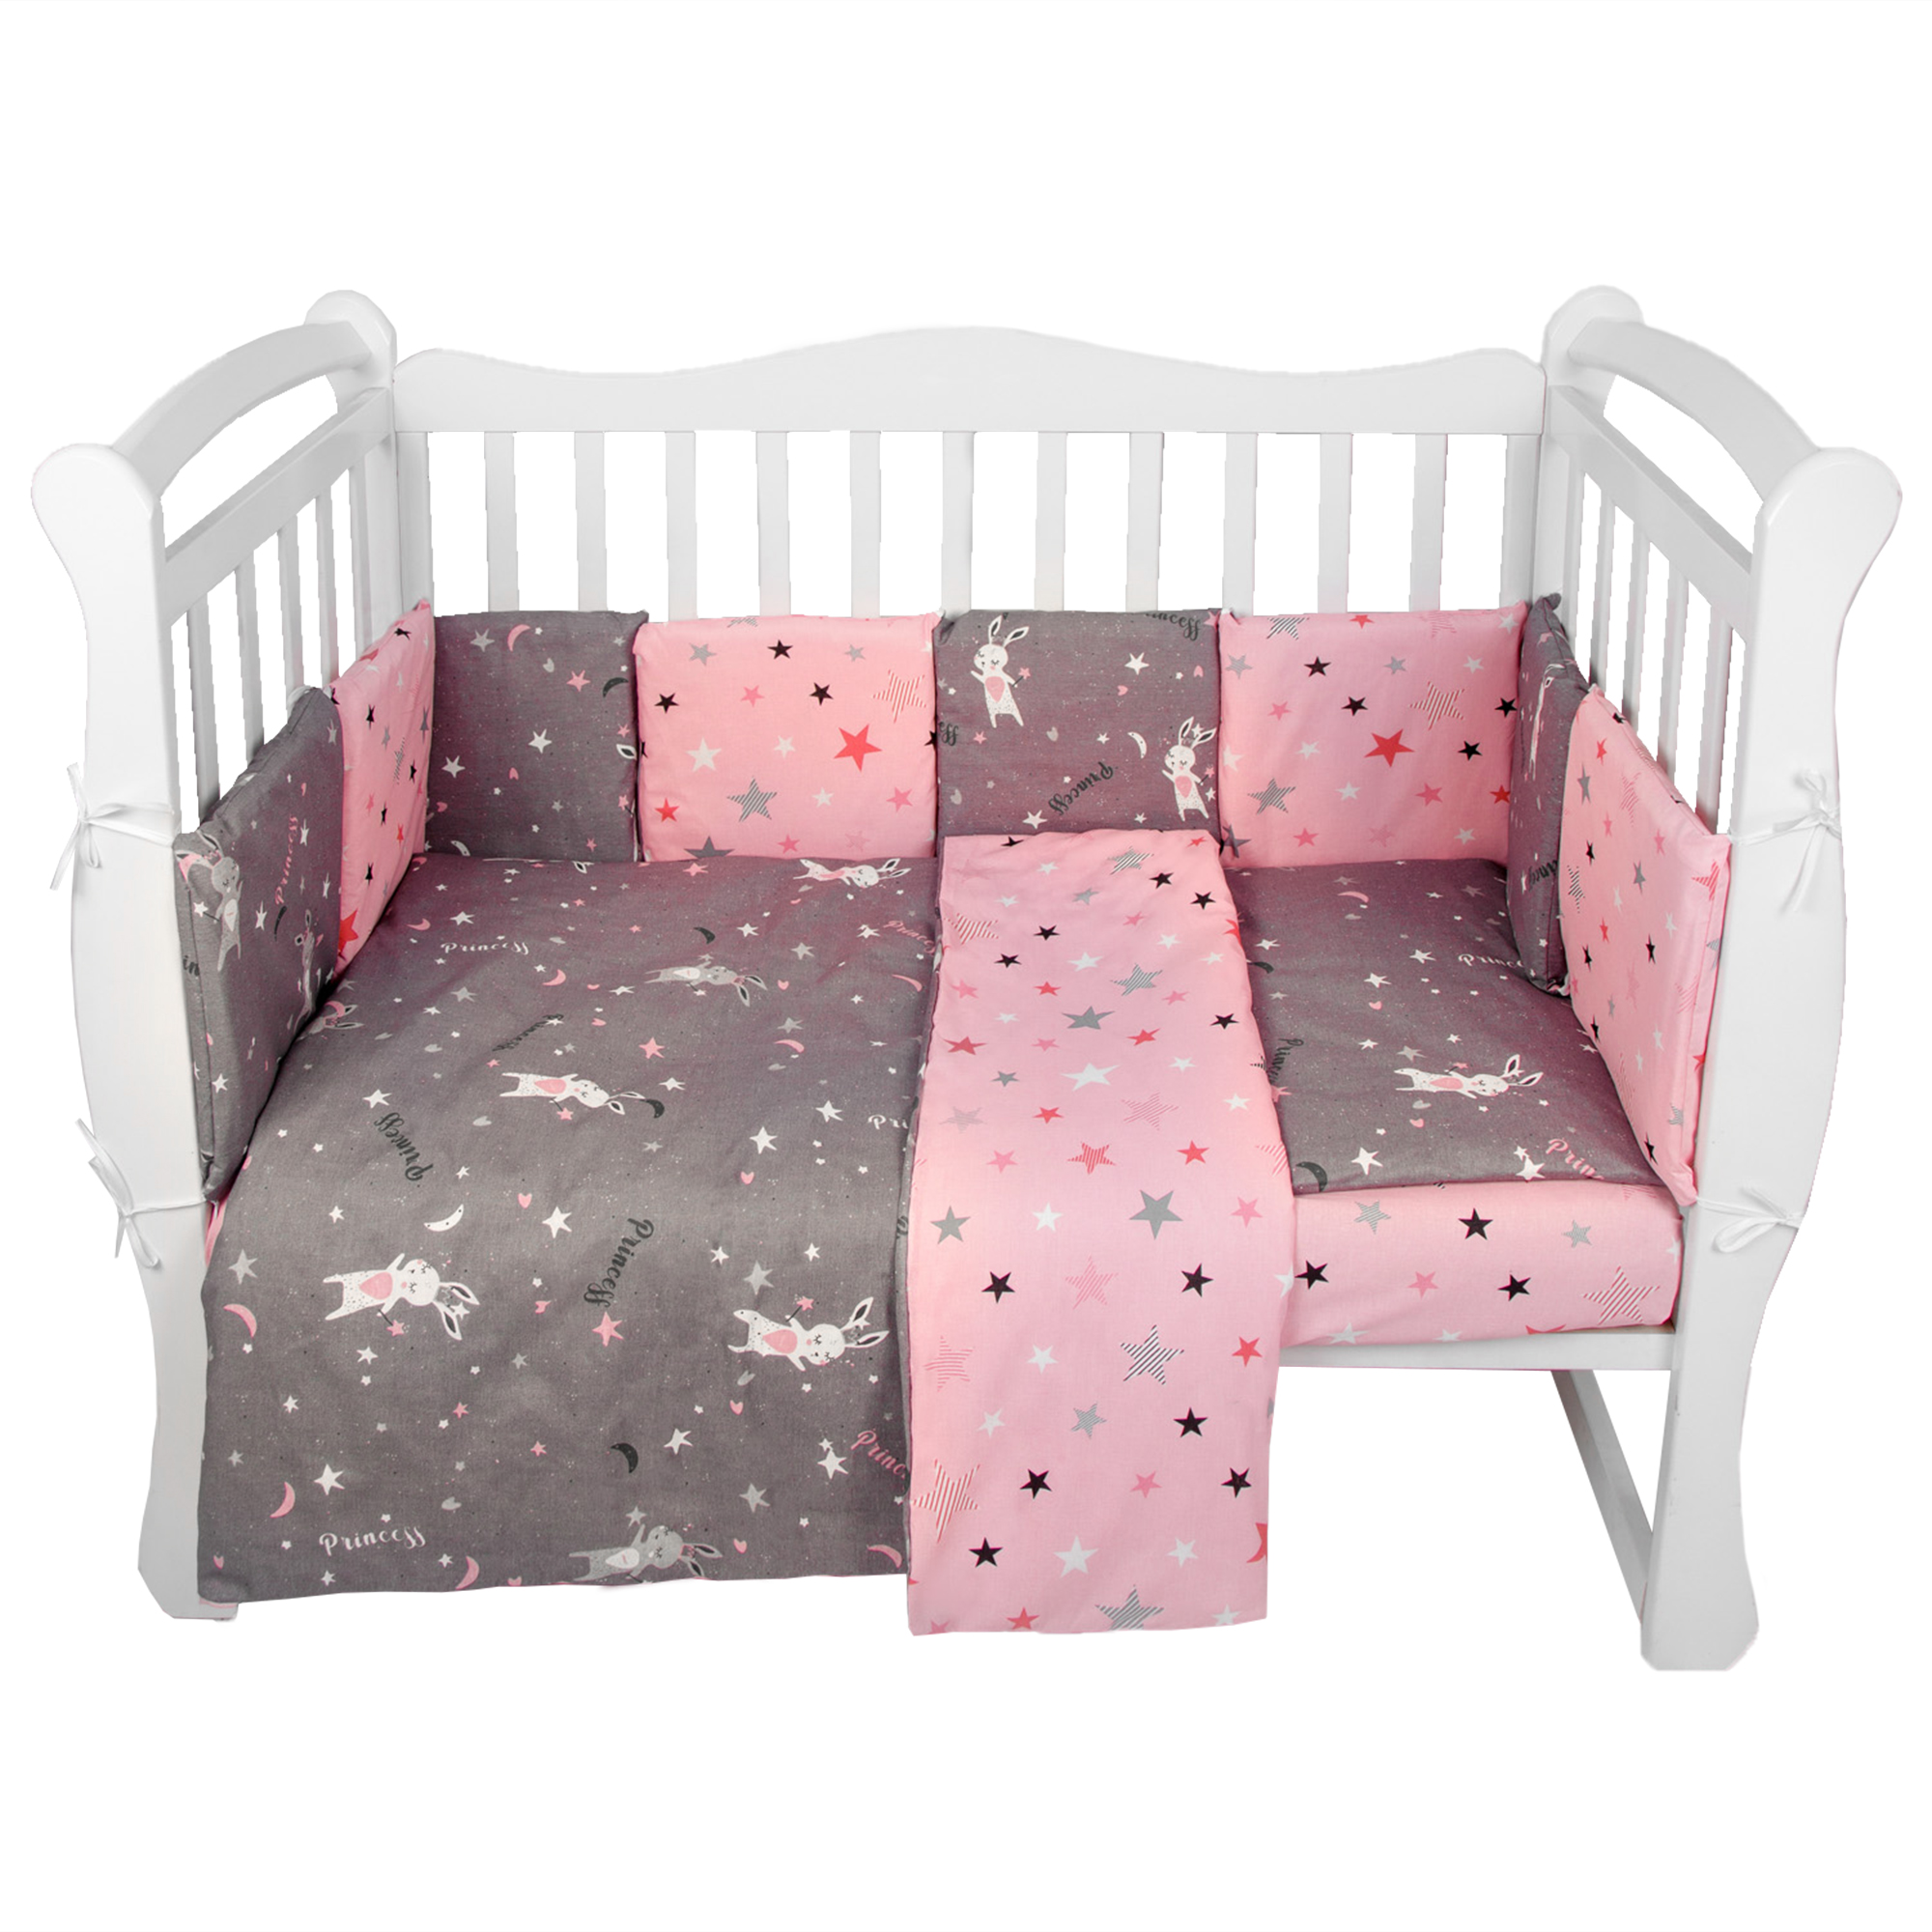 Комплект в кроватку AmaroBaby 15 предметов Premium Princess серый/розовый комплект в кроватку amarobaby котики 15 предметов